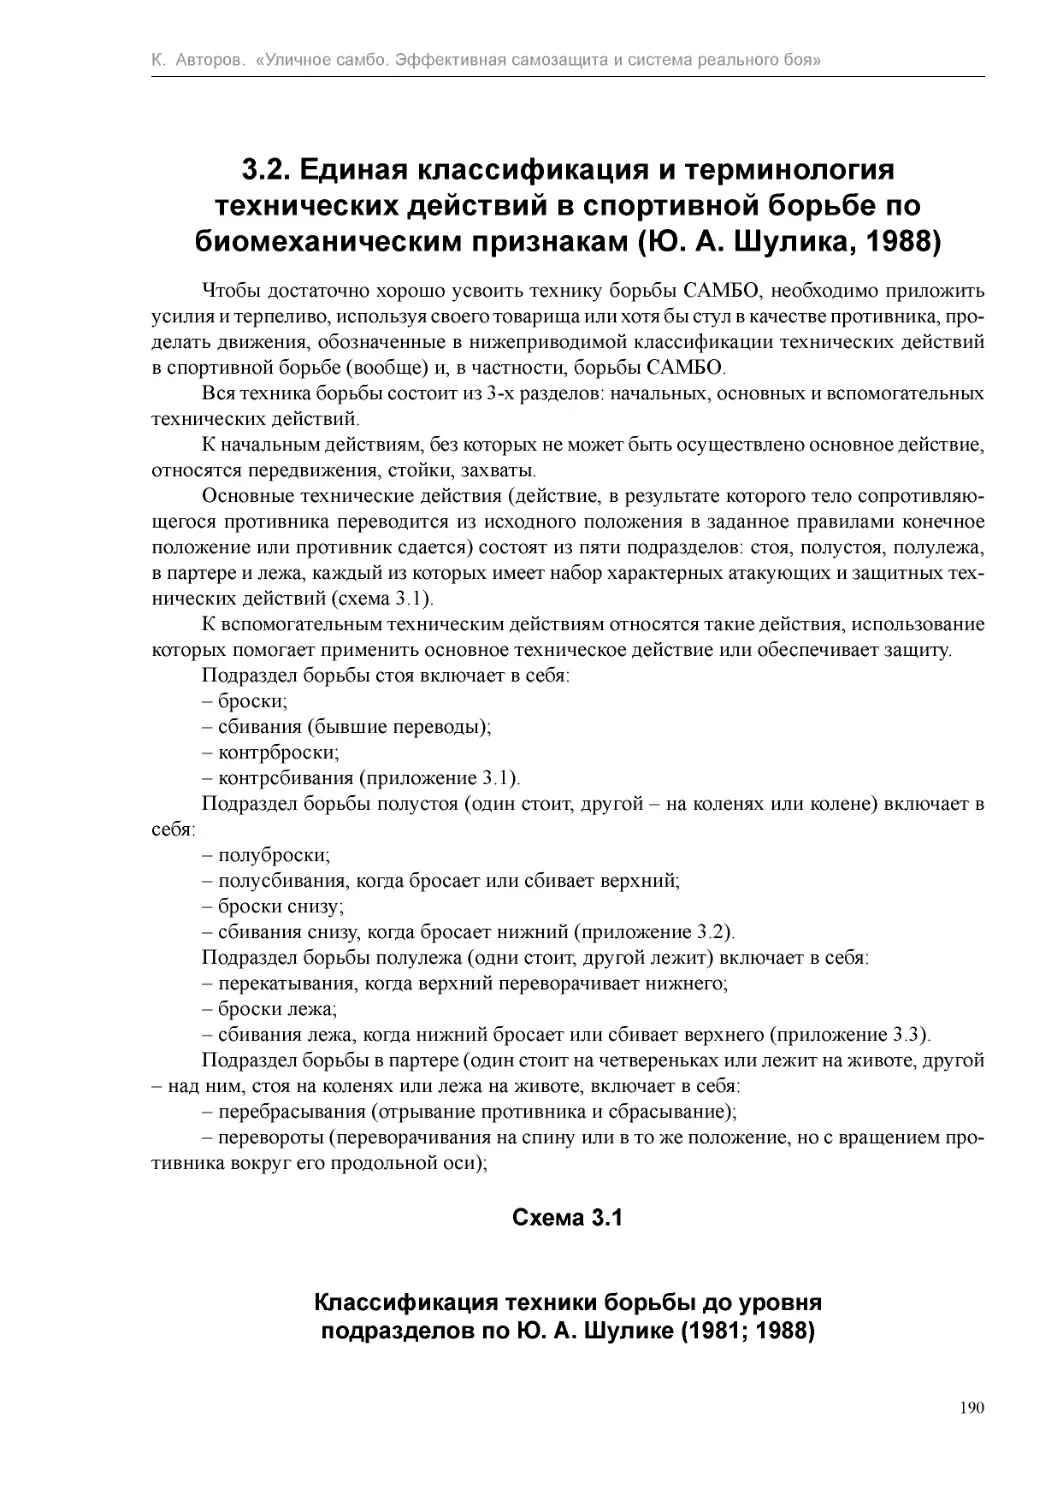 ﻿3.2. Единая классификация и терминология технических действий в спортивной борьбе по биомеханическим признакам øЮ. А. Ӹулика, 1988